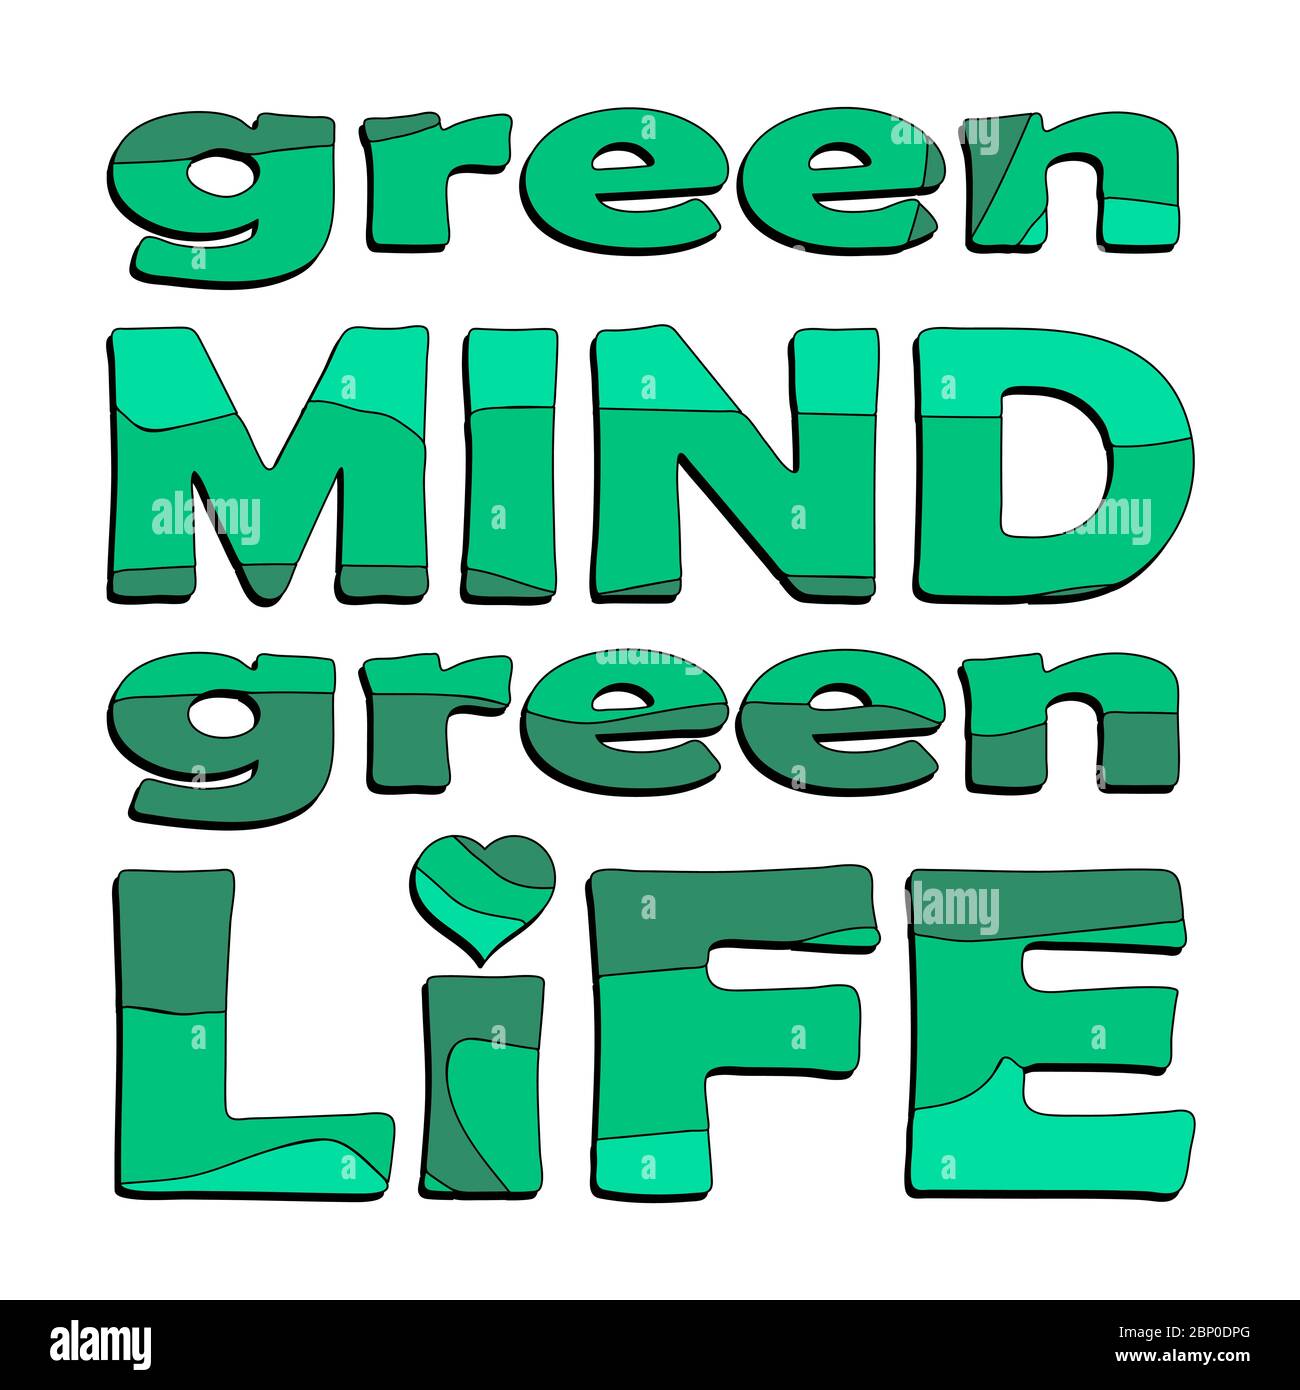 Mente verde, vita verde. Citazione vettoriale sull'eco, gestione dei rifiuti. Frase motivazionale per scegliere uno stile di vita ecocompatibile, utilizzando prodotti riutilizzabili. Illustrazione Vettoriale